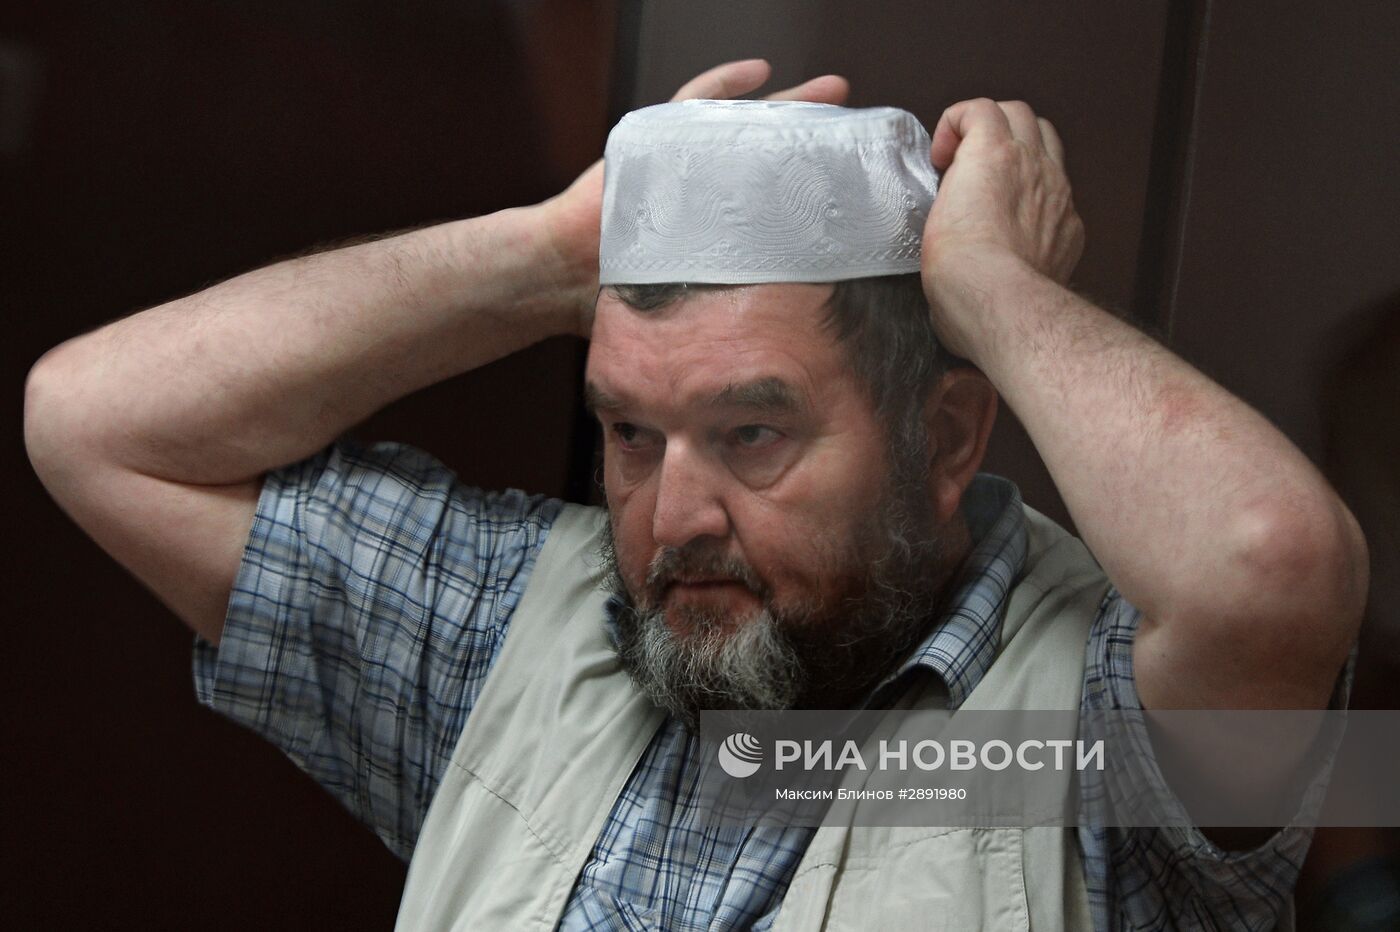 Рассмотрение ходатайства следствия об аресте имама мечети "Ярдям" Махмуда Велитова в Бутырском суде